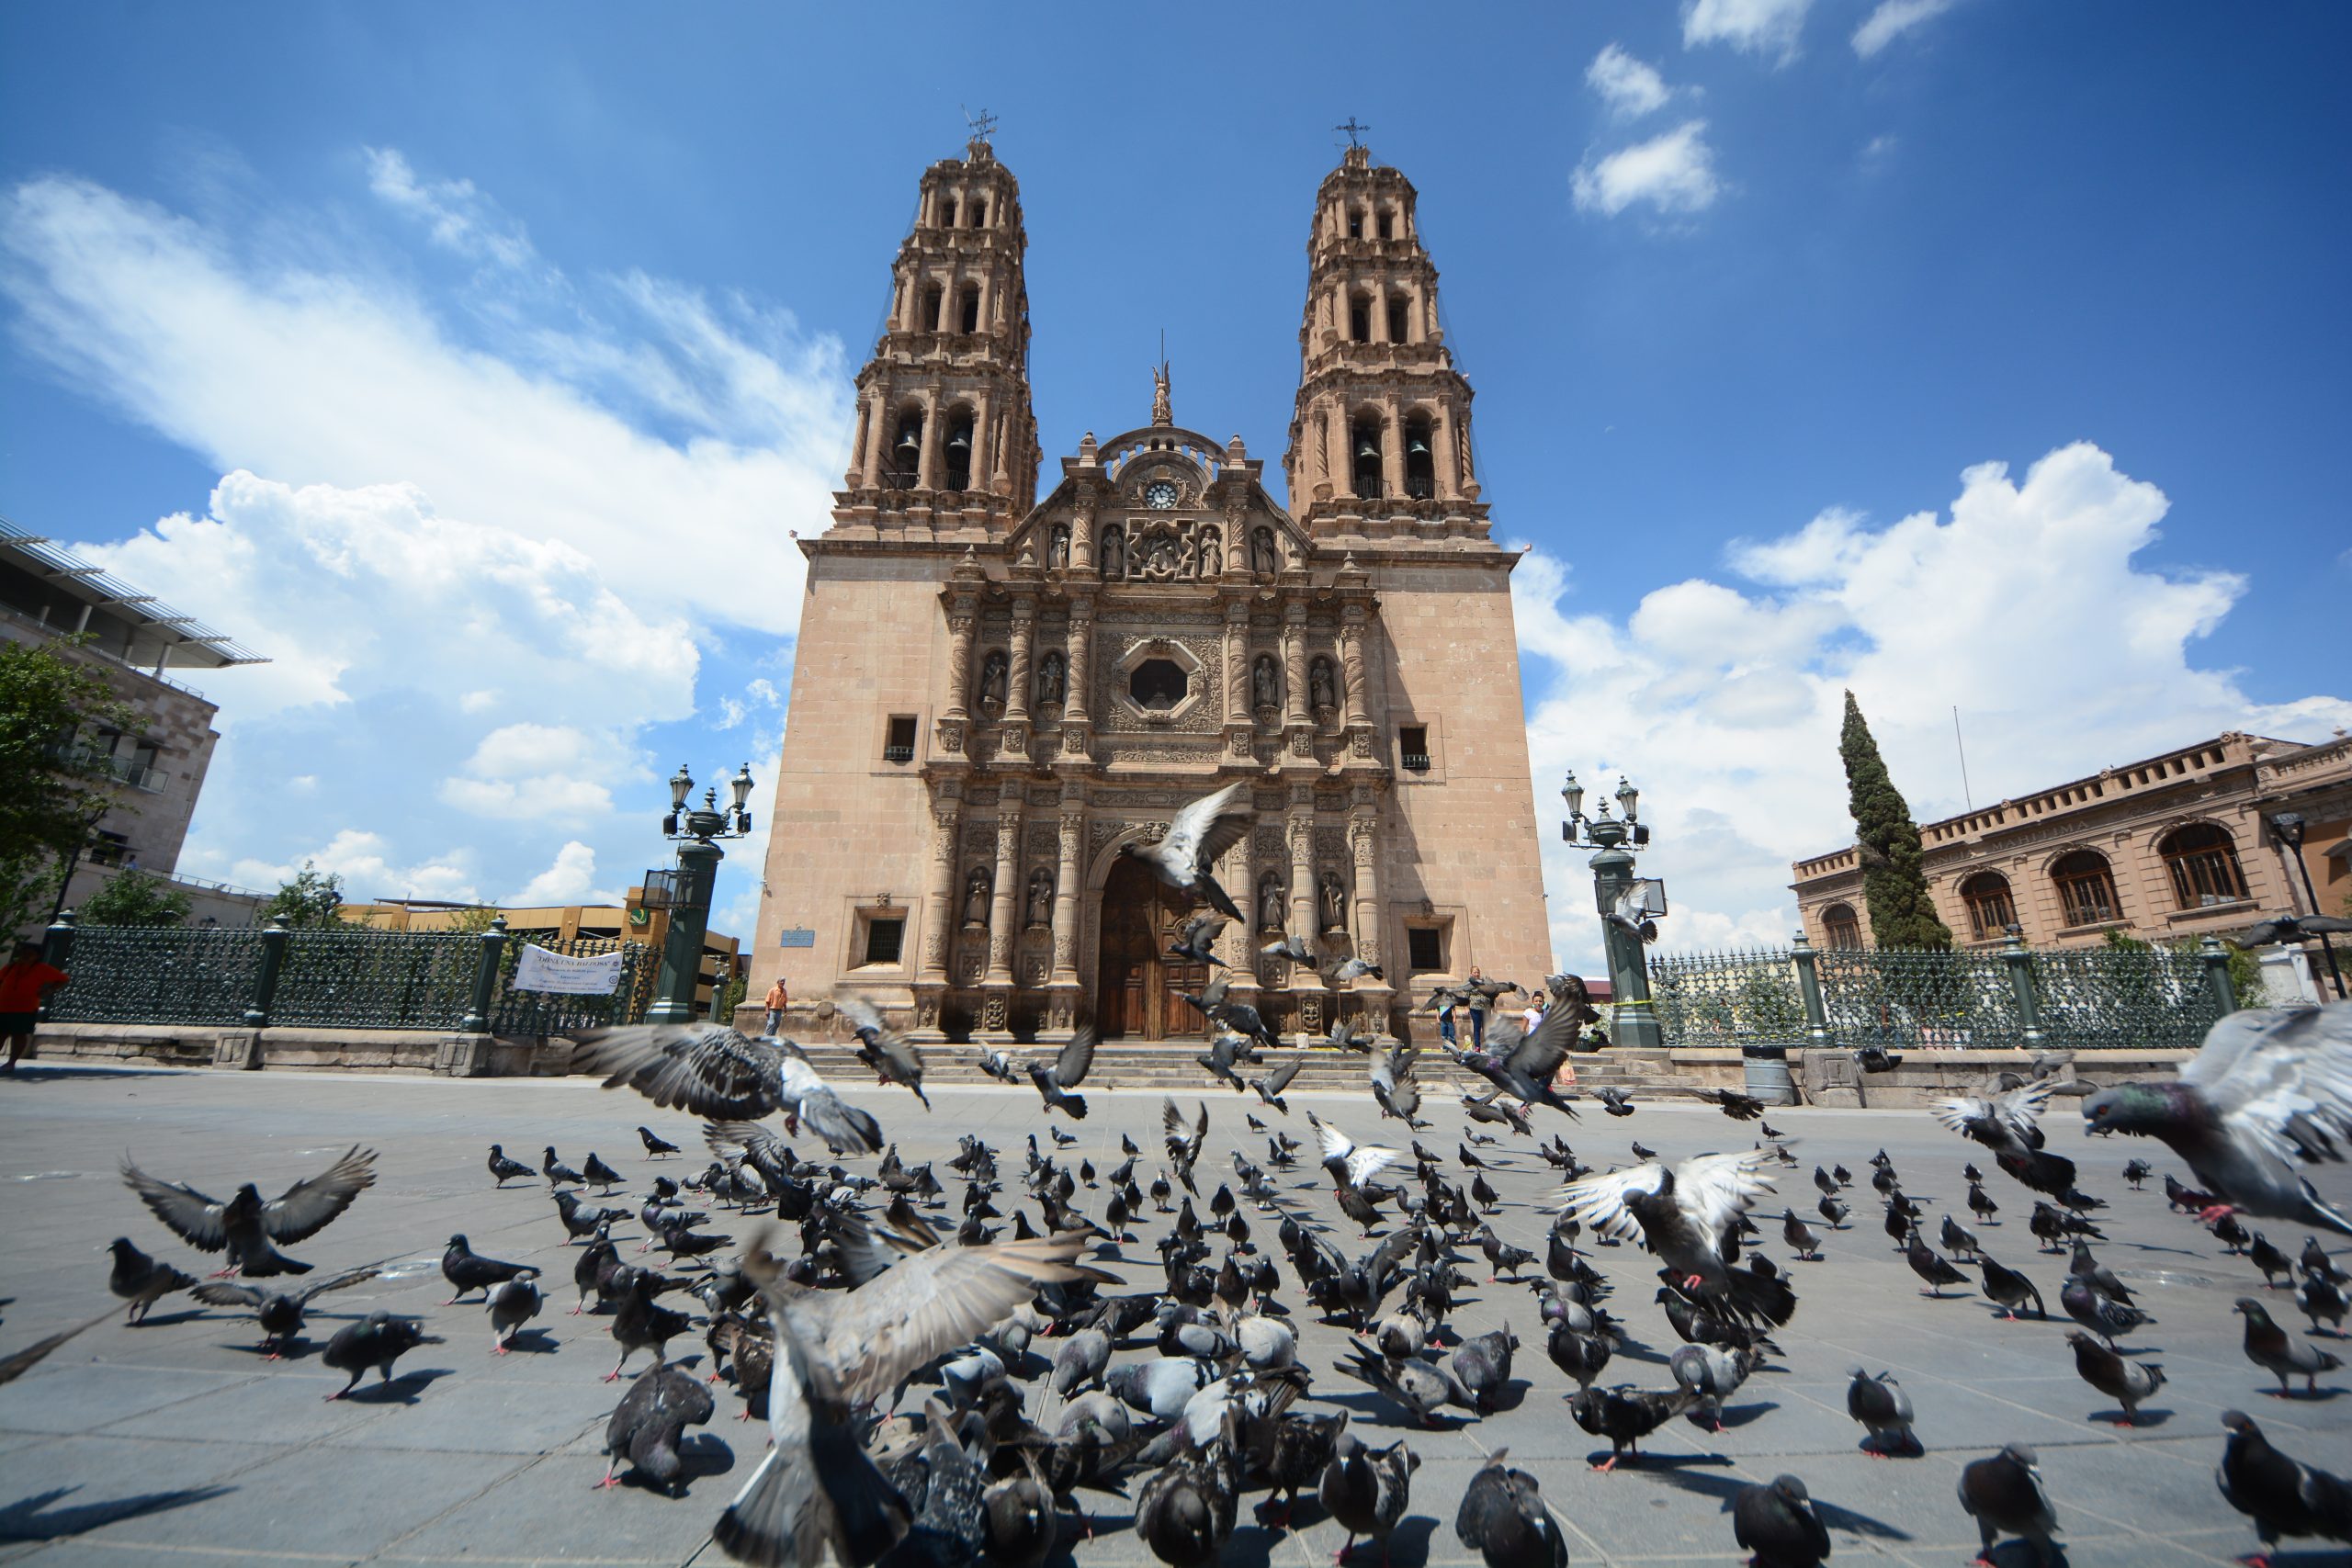 Catedral de Chihuahua es el templo sede de la Arquidiócesis de Chihuahua es considerada como el más importante monumento religioso de estilo barroco en el norte de México.